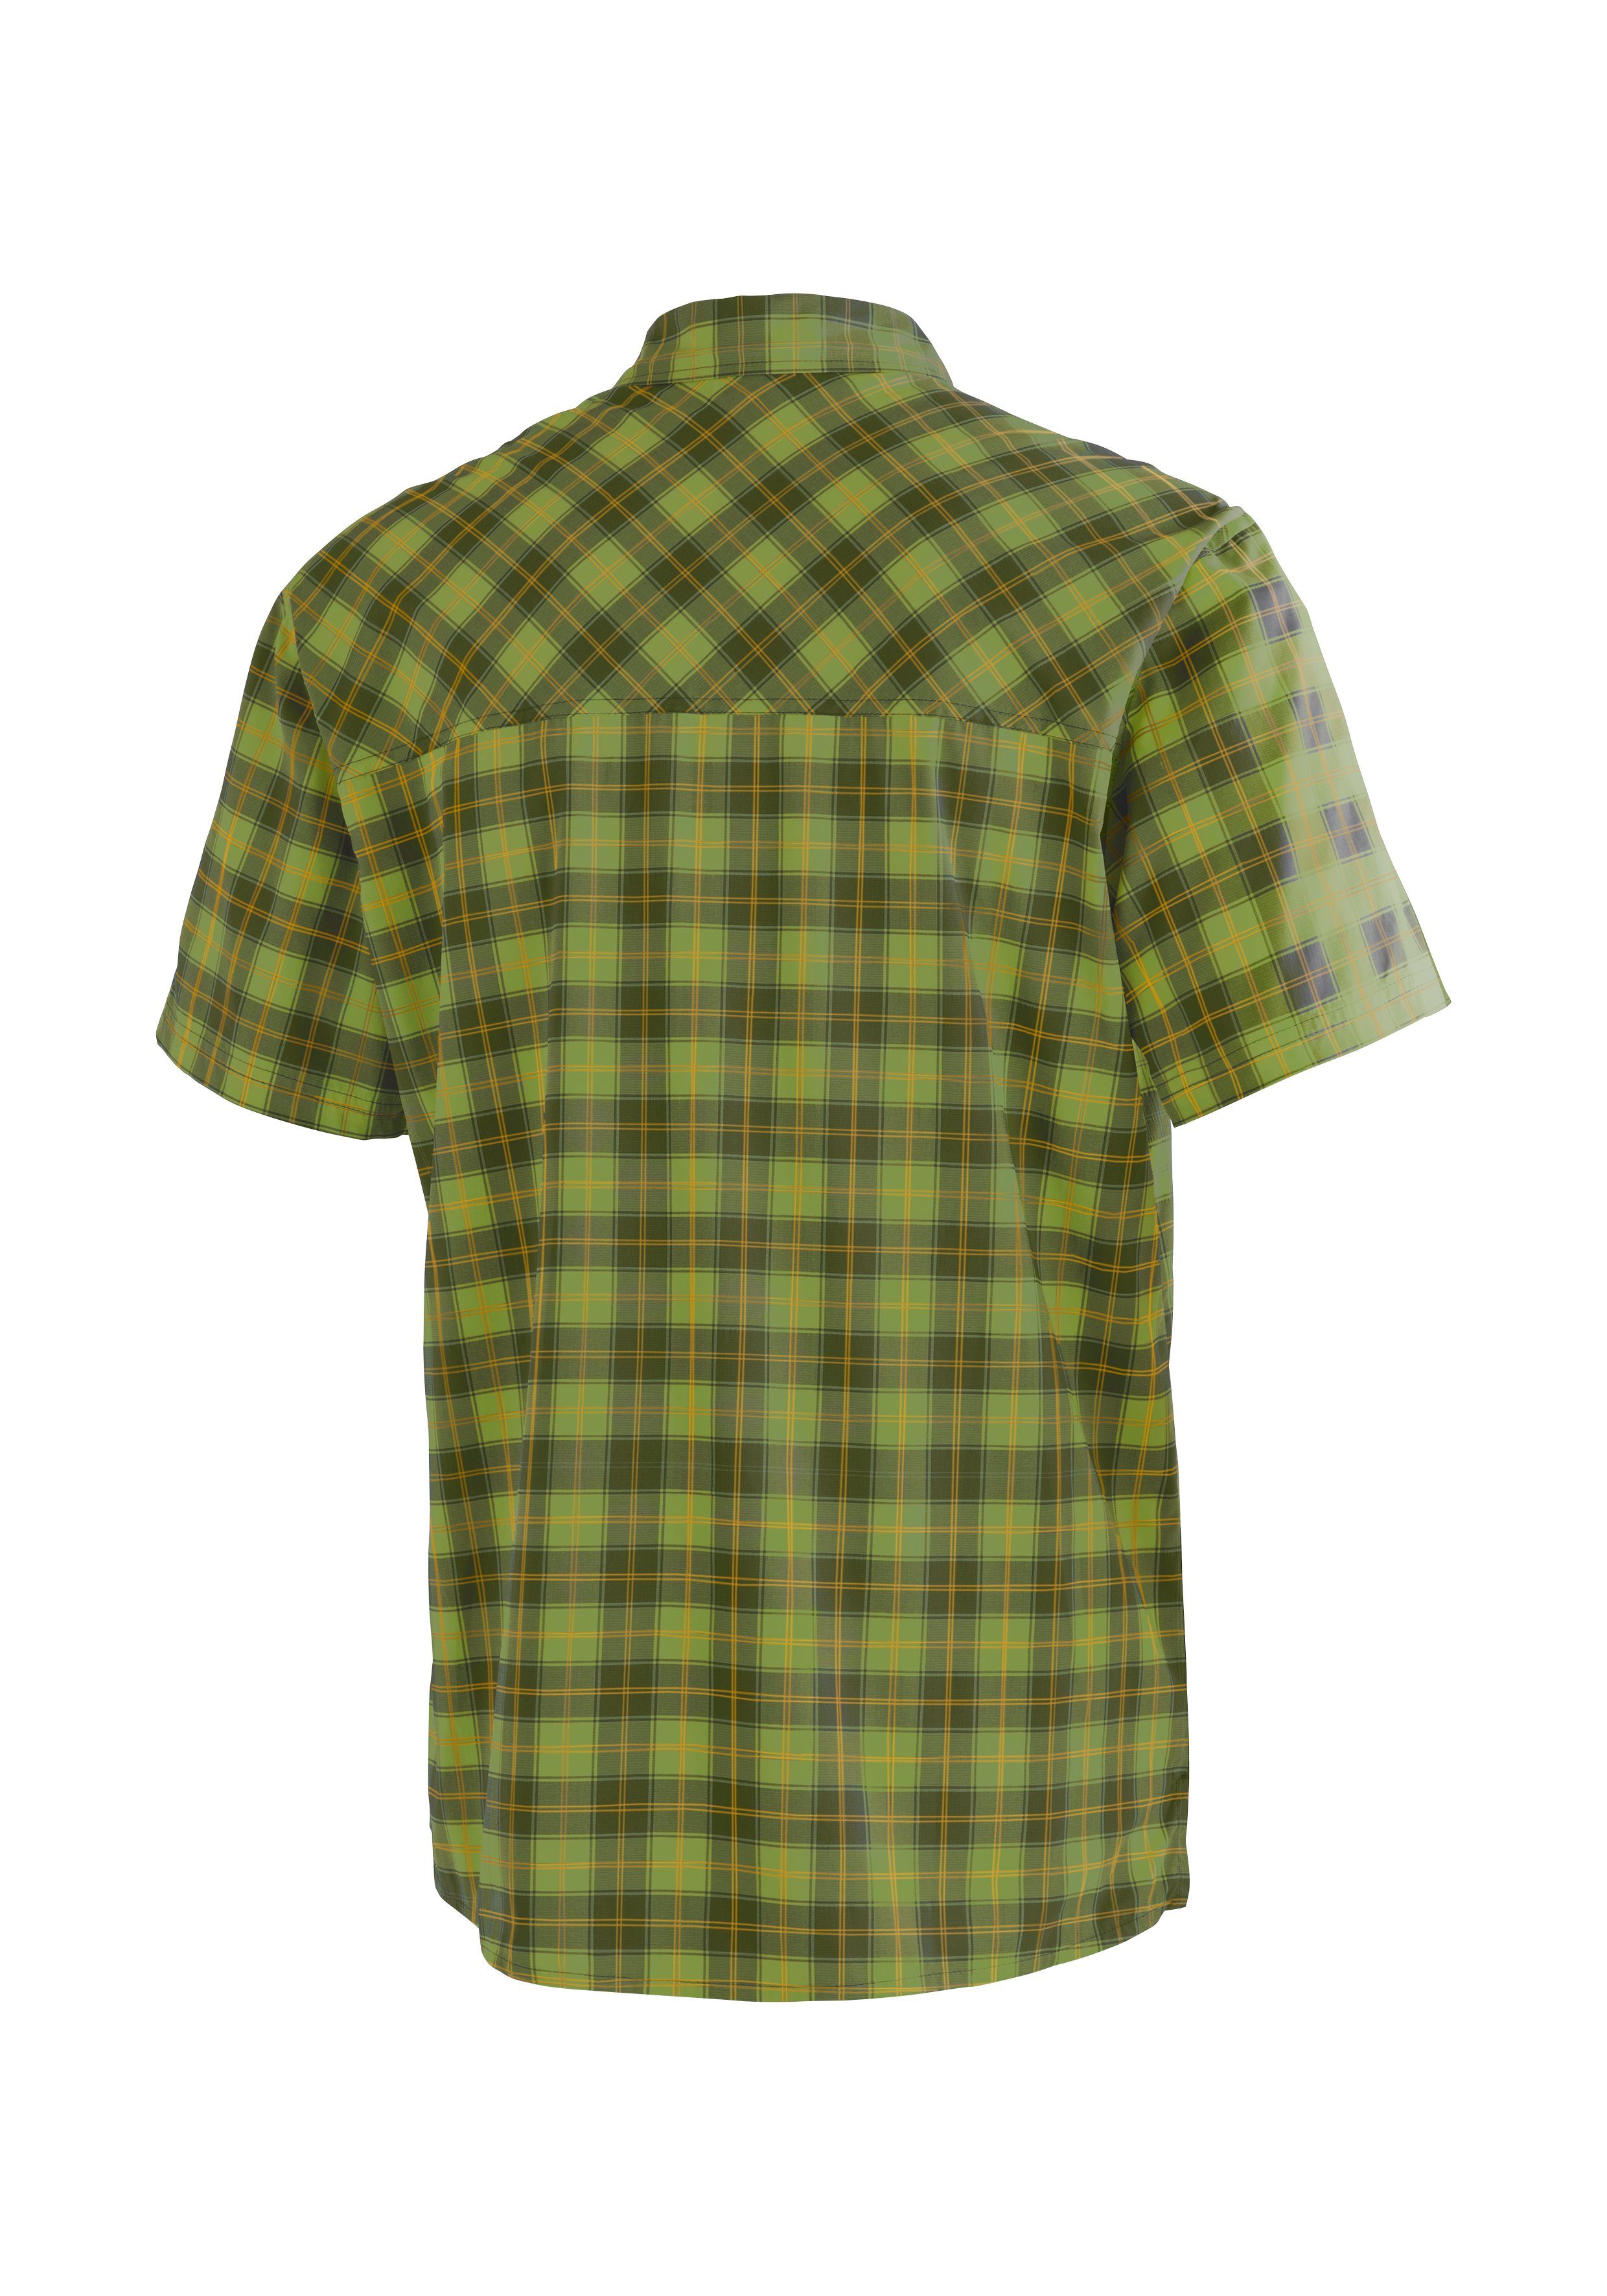 kurzarm Wanderhemd, atmungsaktives S/S M Maier grün Karohemd Outdoorhemd Sports Herrenhemd, Kasen